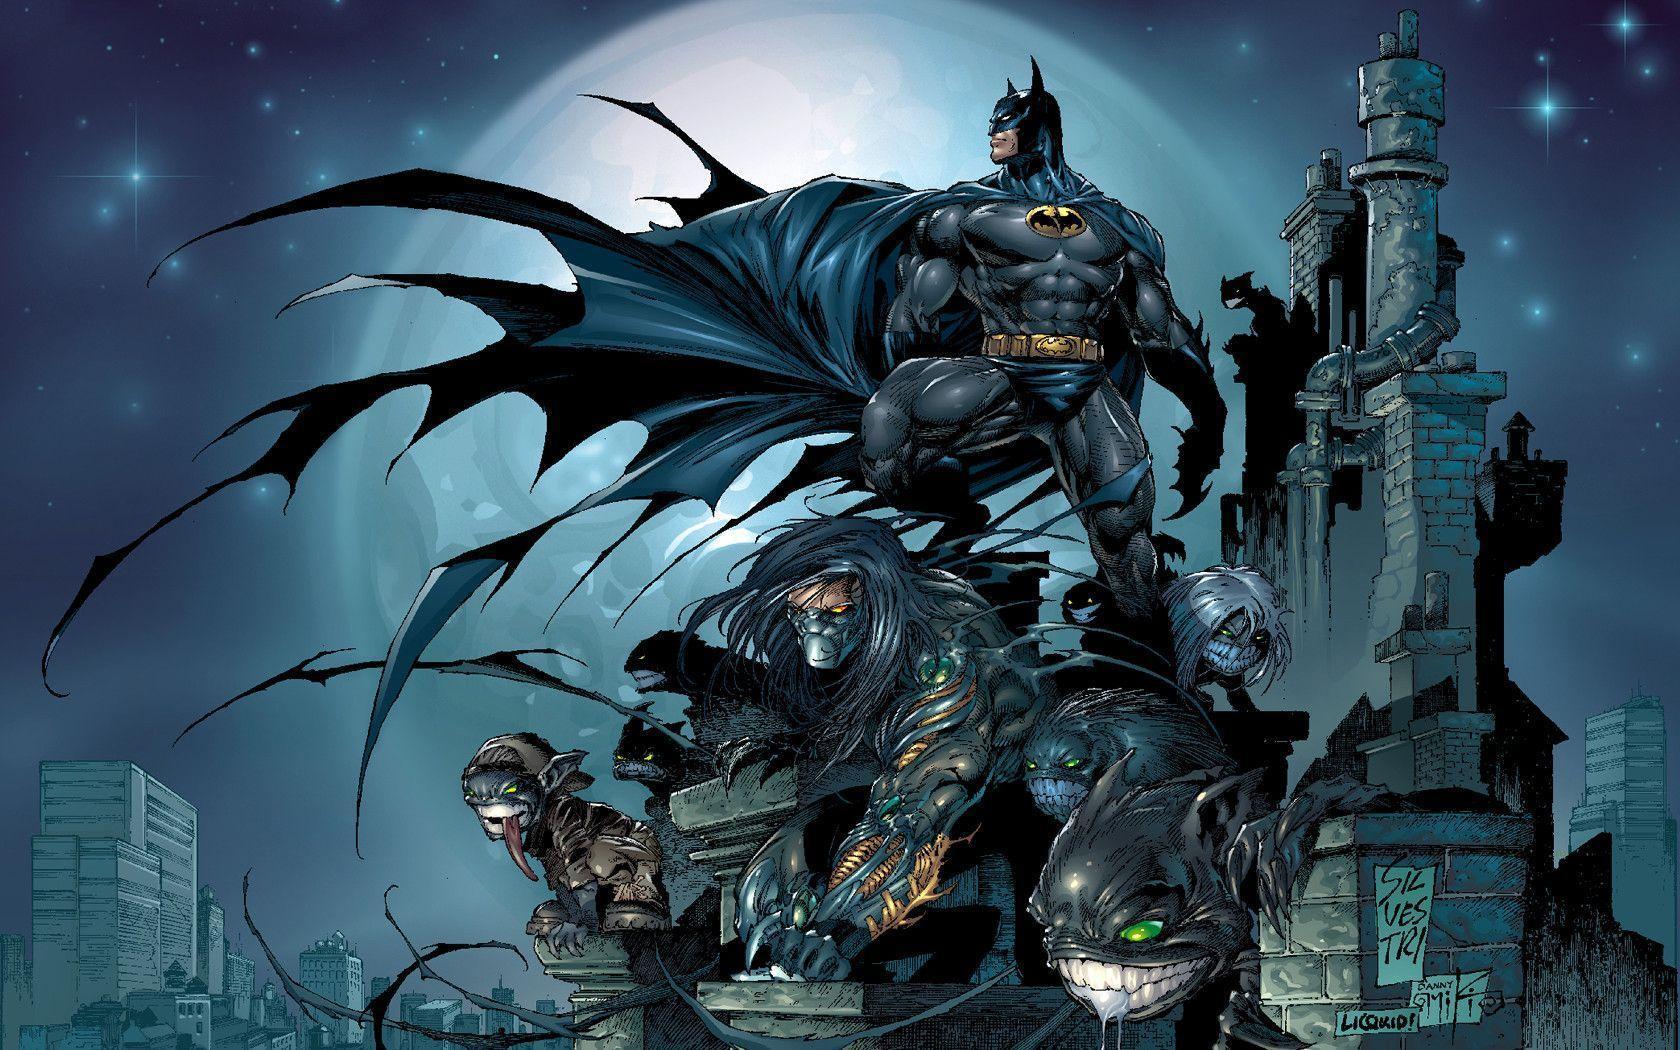 72+] Batman Comics Wallpapers - WallpaperSafari